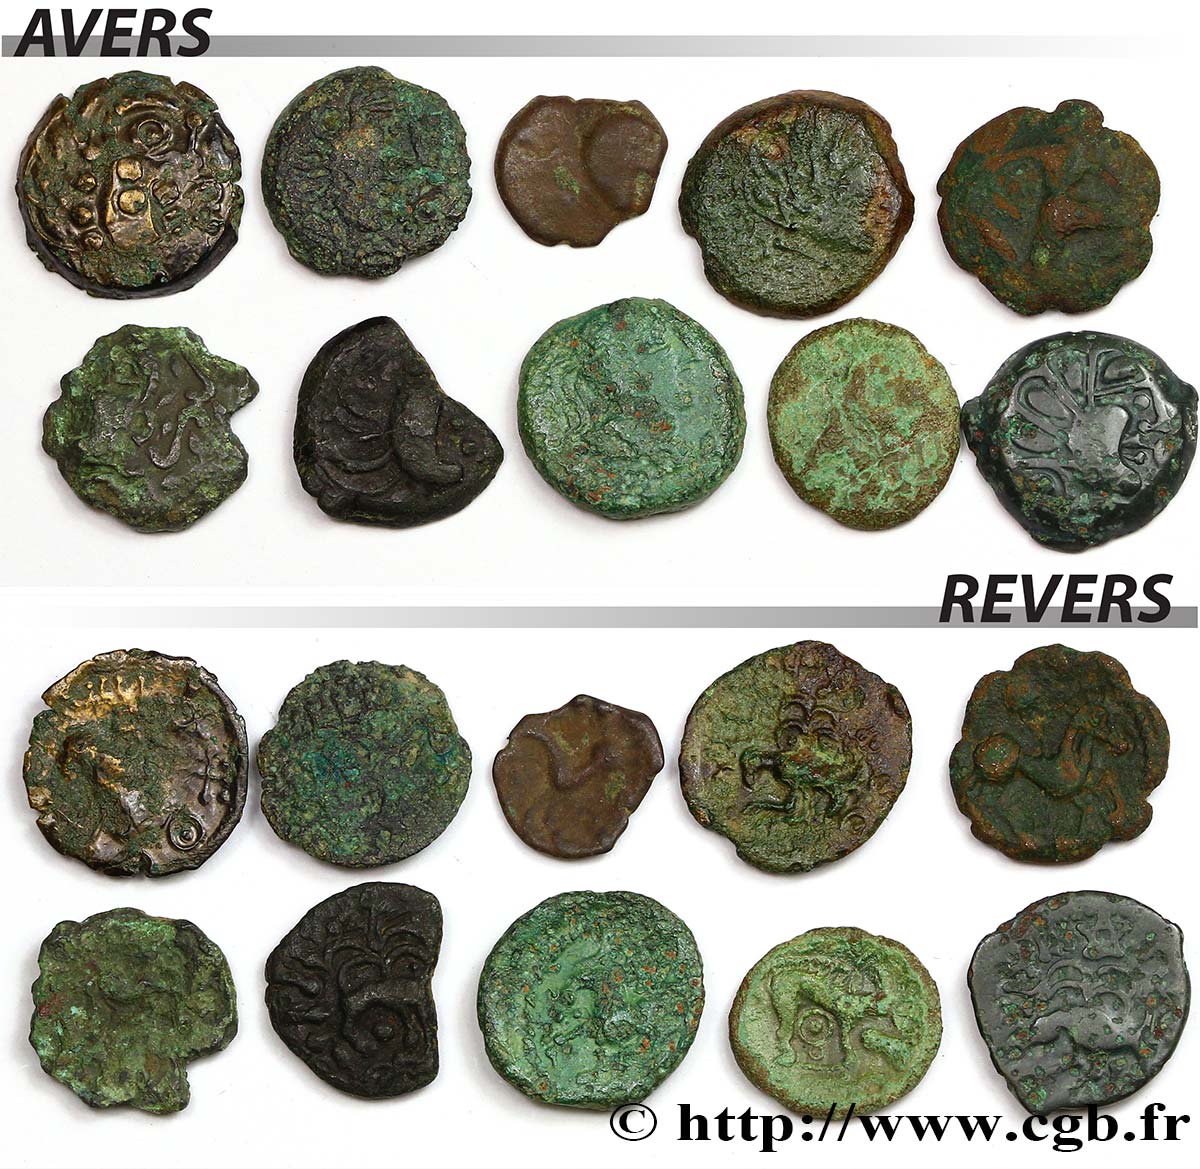 Gallia Lot de 10 bronzes variés lot